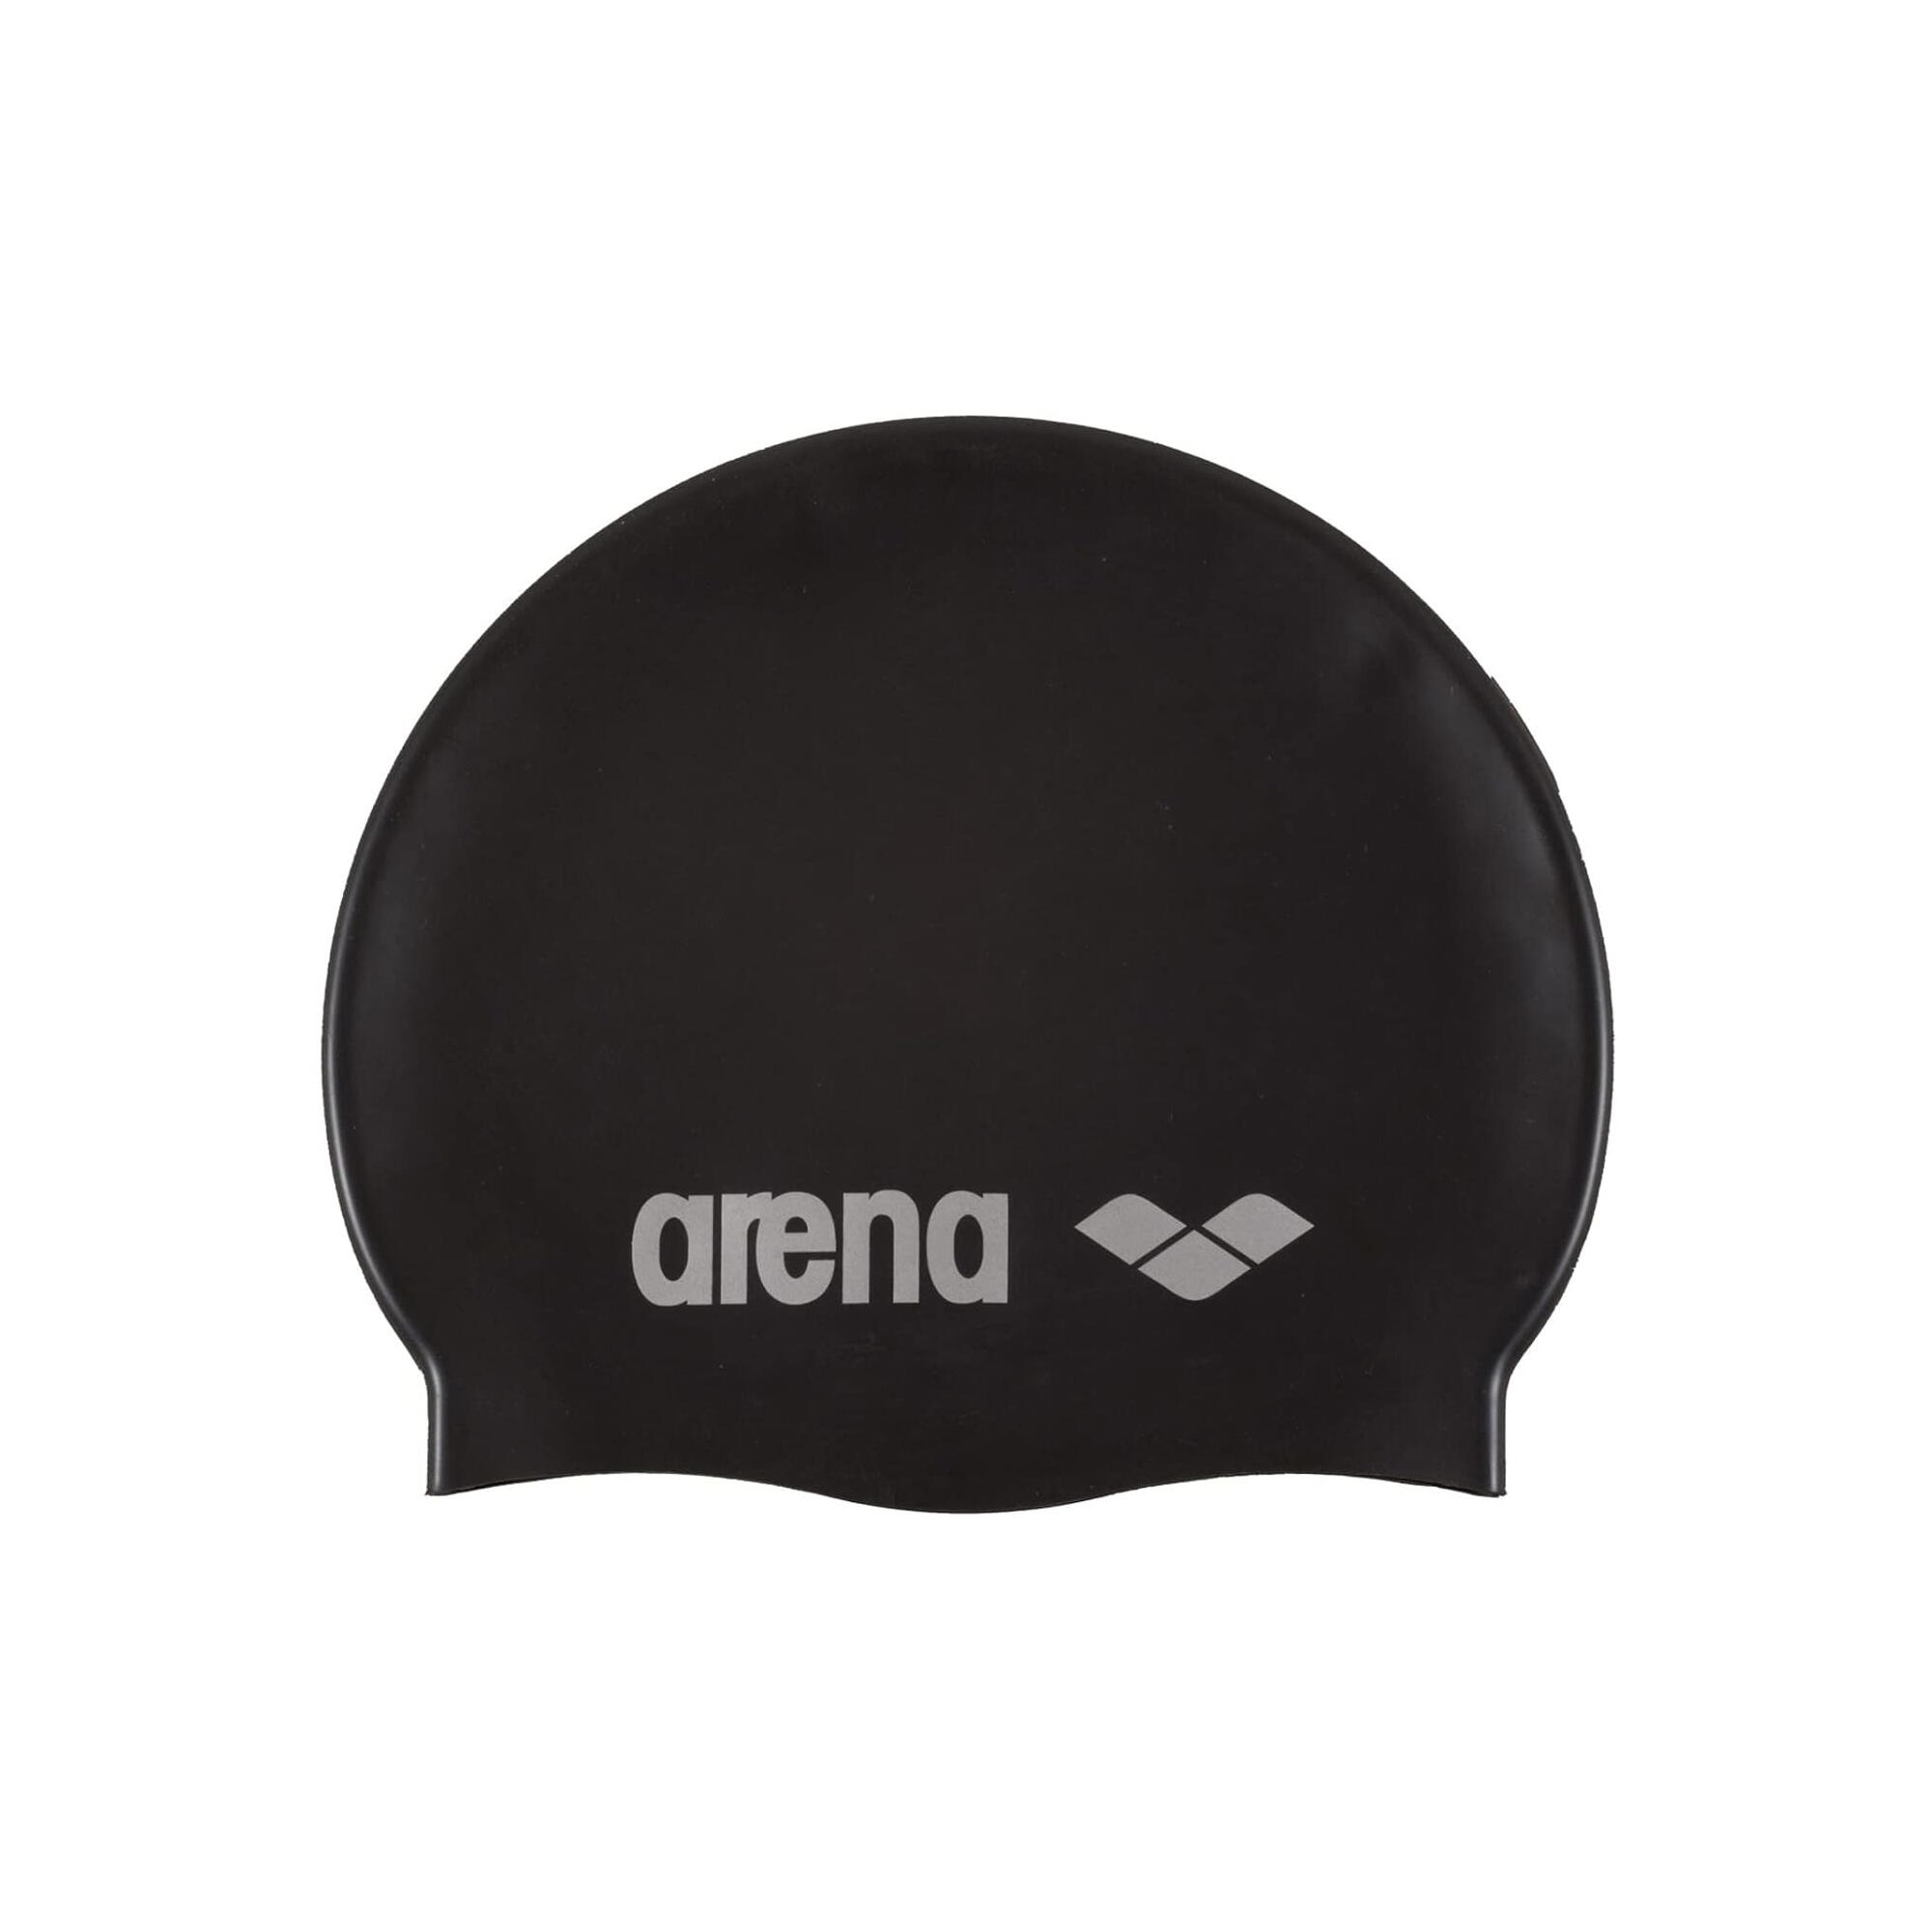 ARENA Unisex Adult Classic Silicone Swim Cap (Black/Silver)